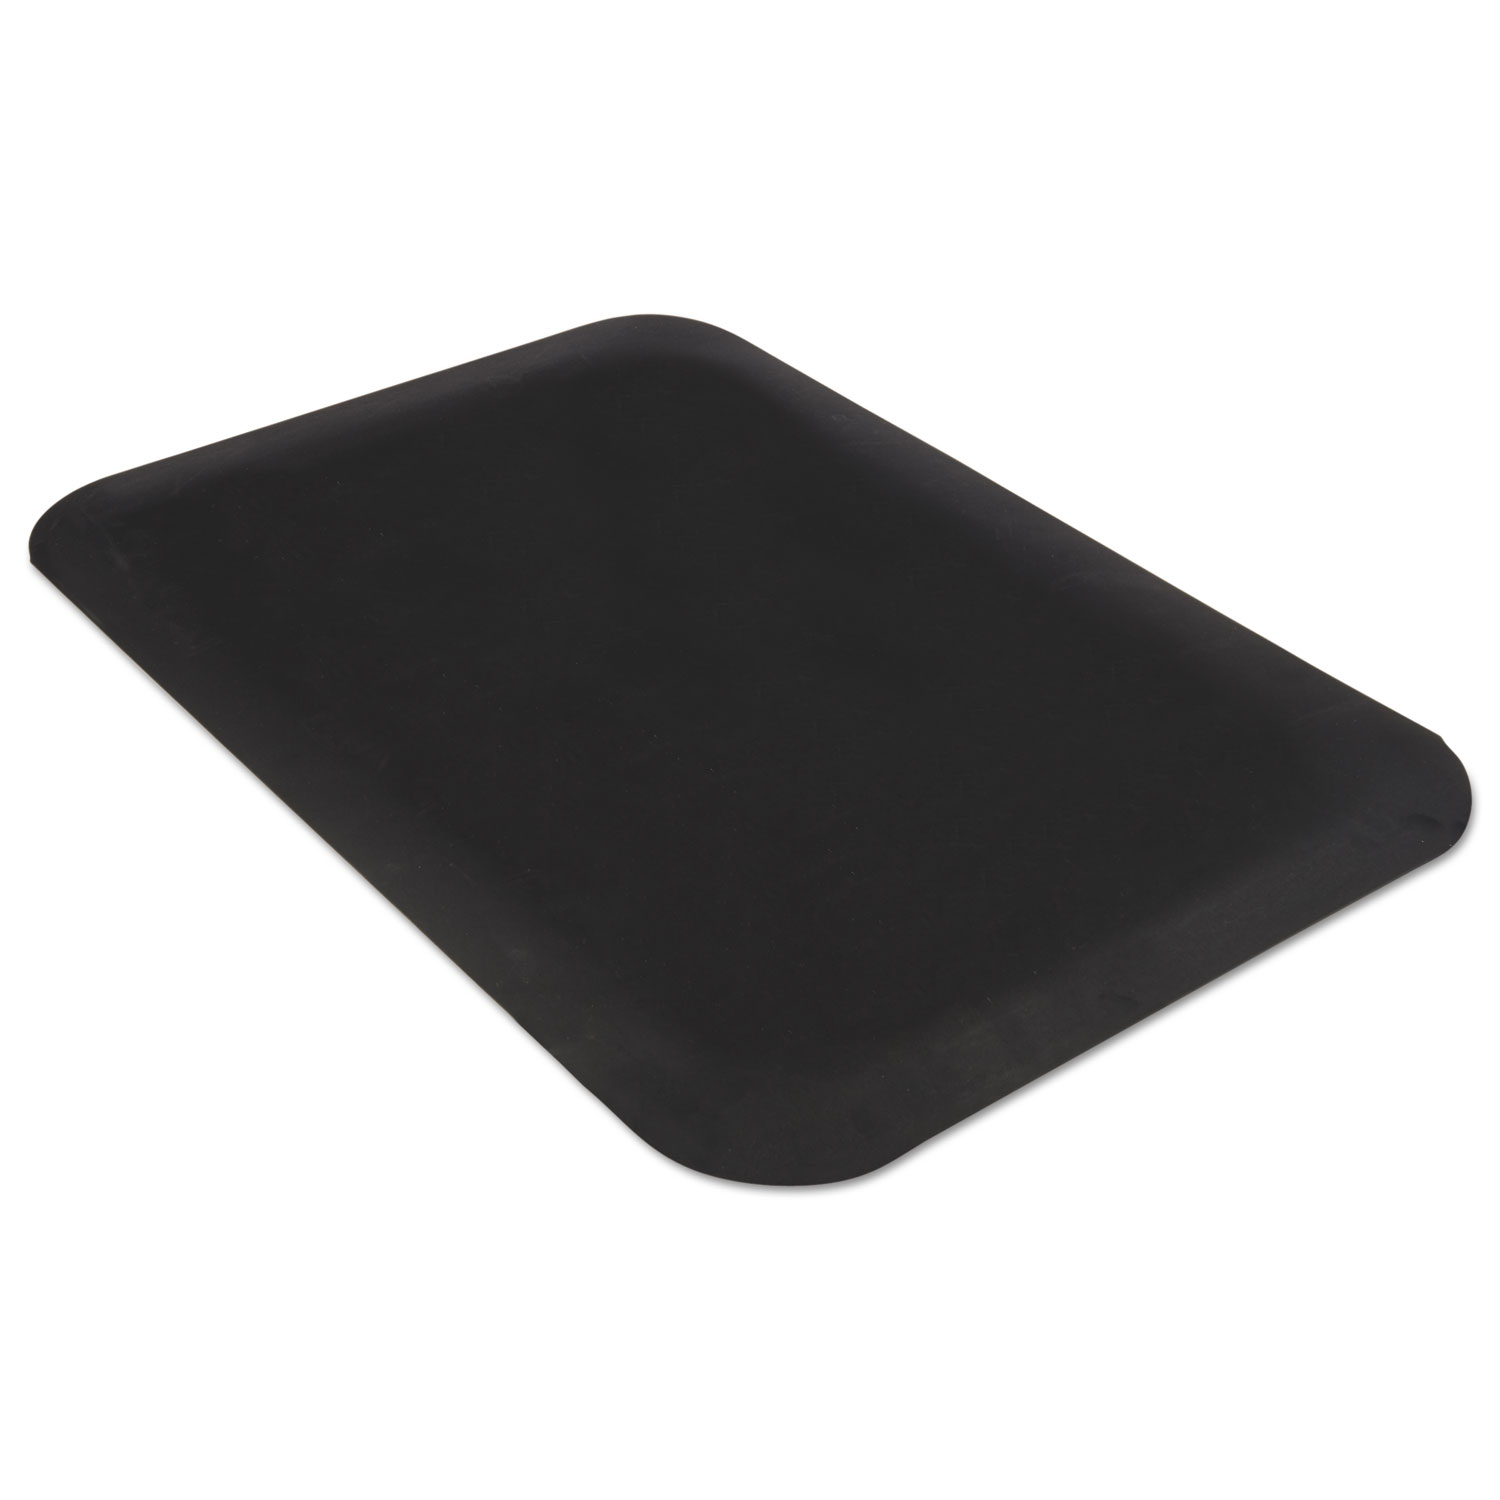  Guardian 44020335 Pro Top Anti-Fatigue Mat, PVC Foam/Solid PVC, 24 x 36, Black (MLL44020335) 